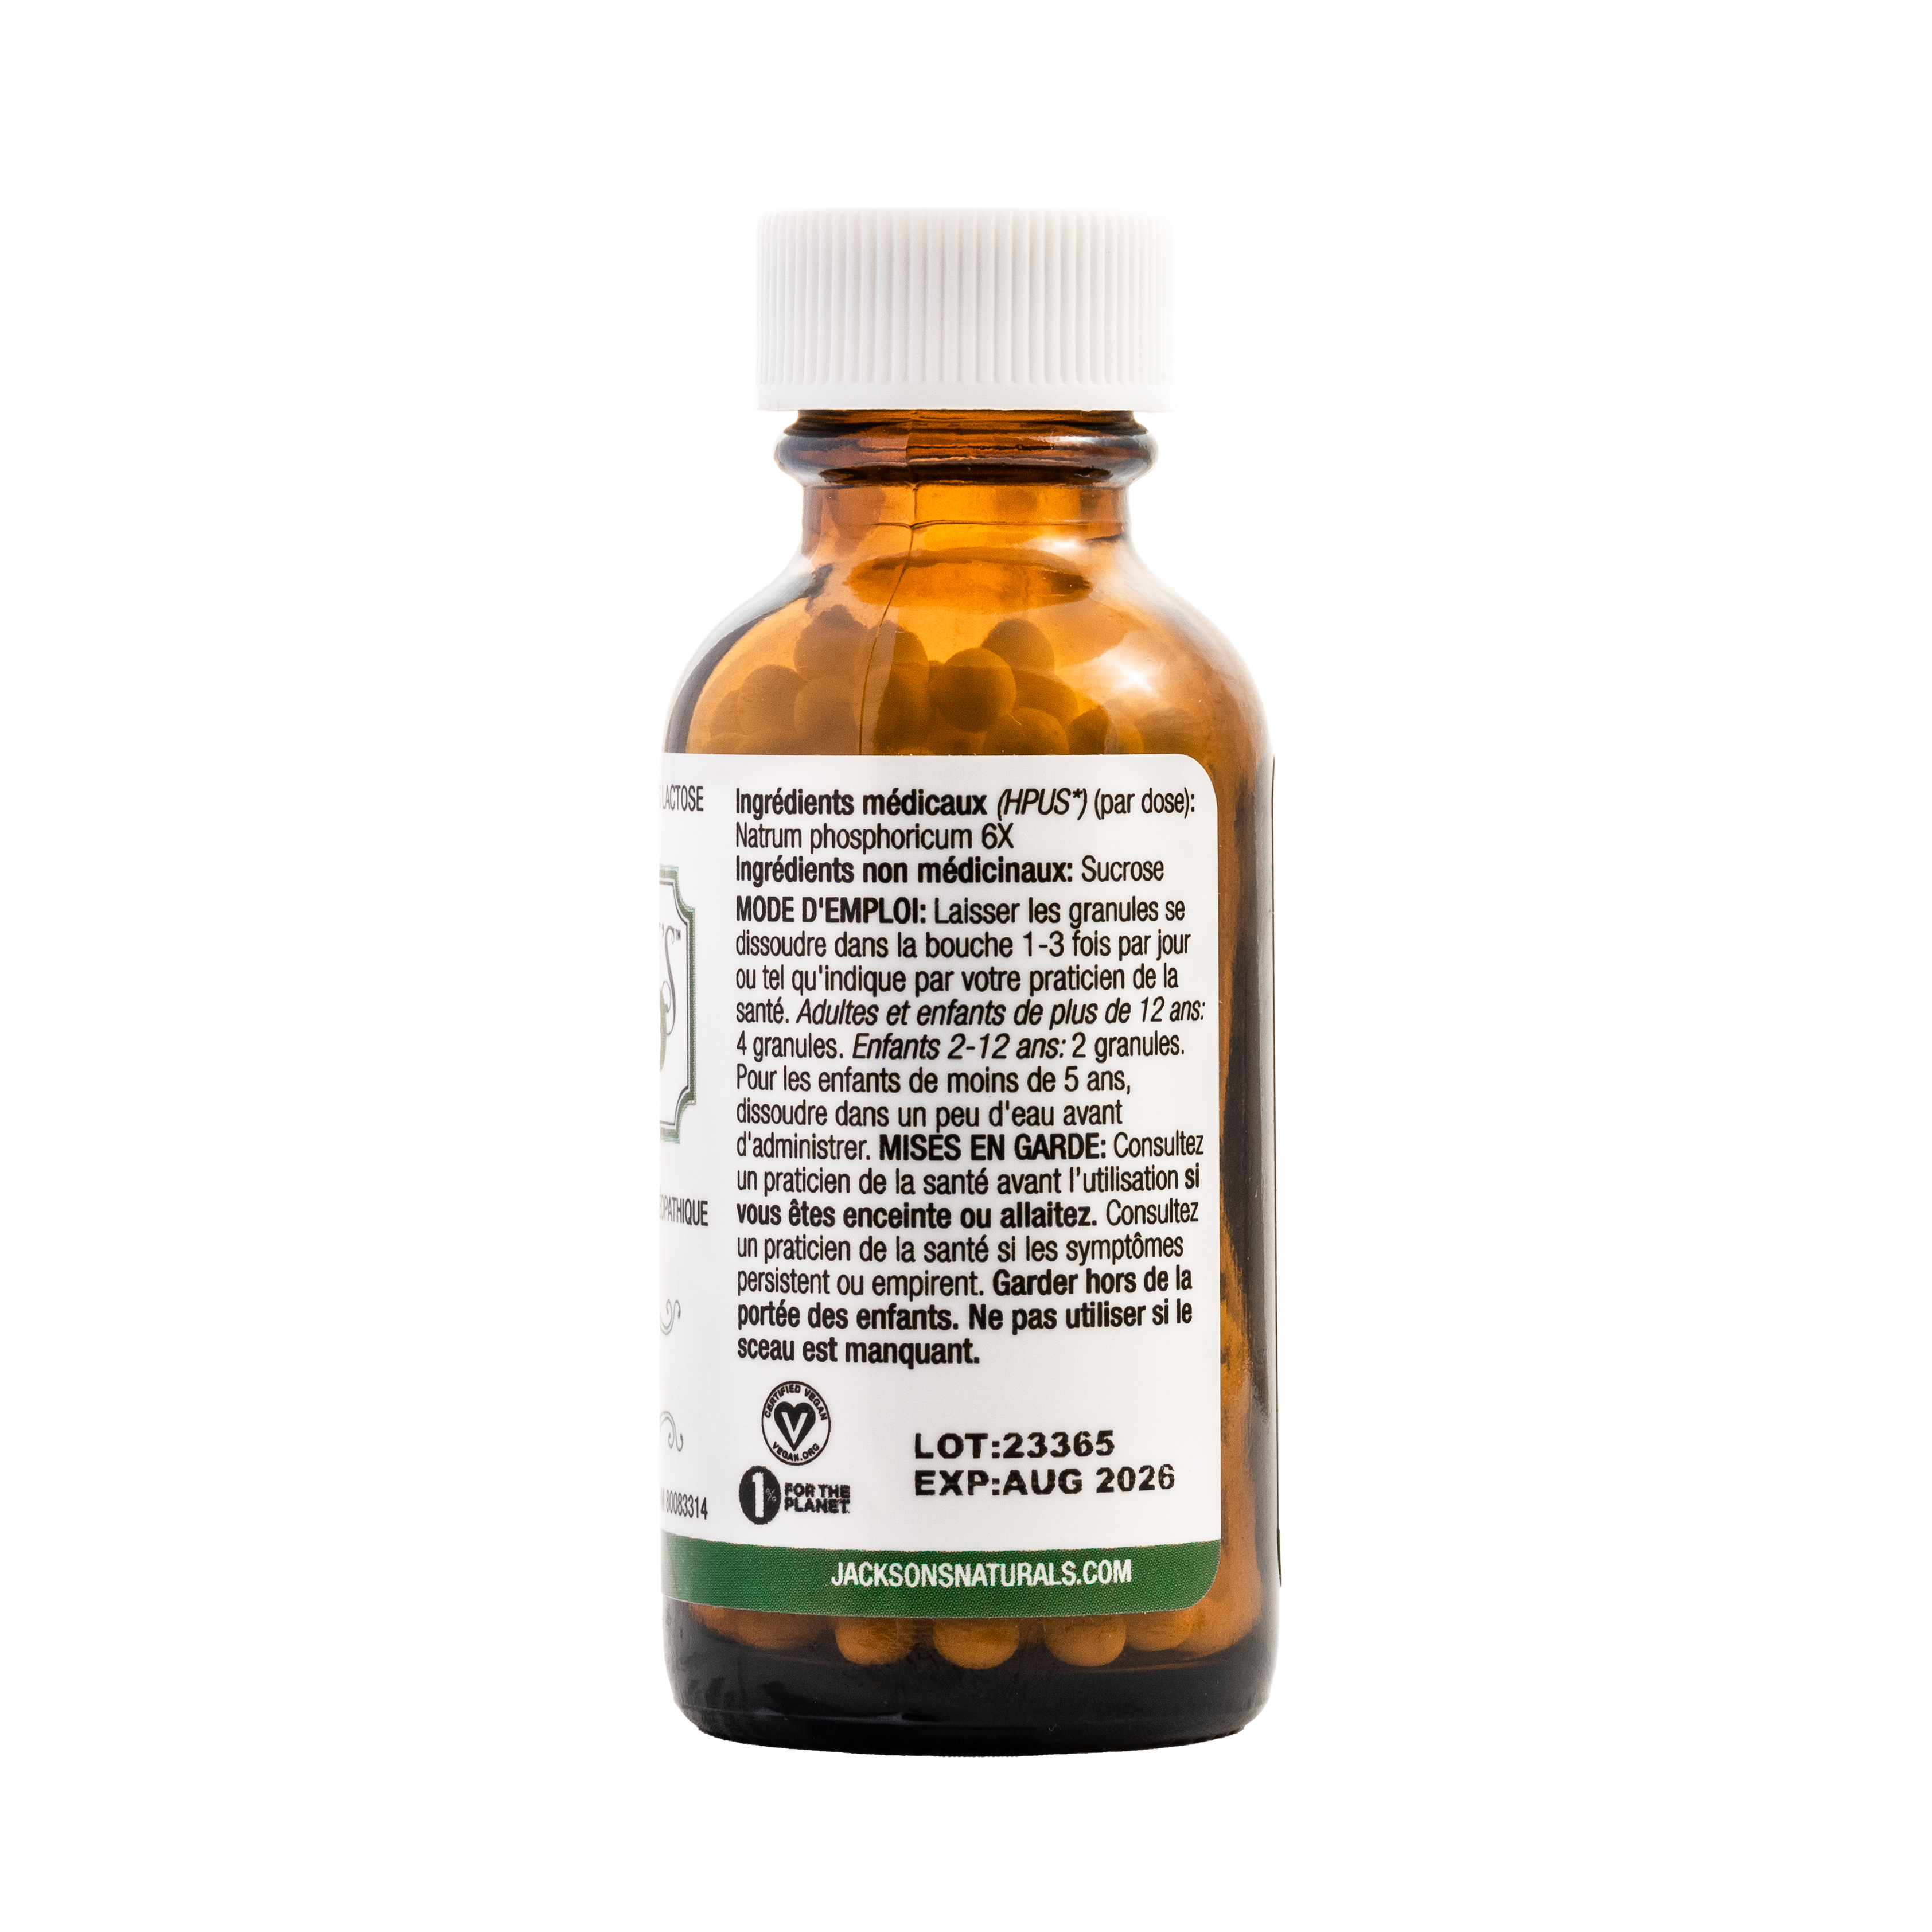 #10 Nat phos 6X (phosphate de sodium) - Sel de cellules de Schuessler (tissus) certifié végétalien et sans lactose